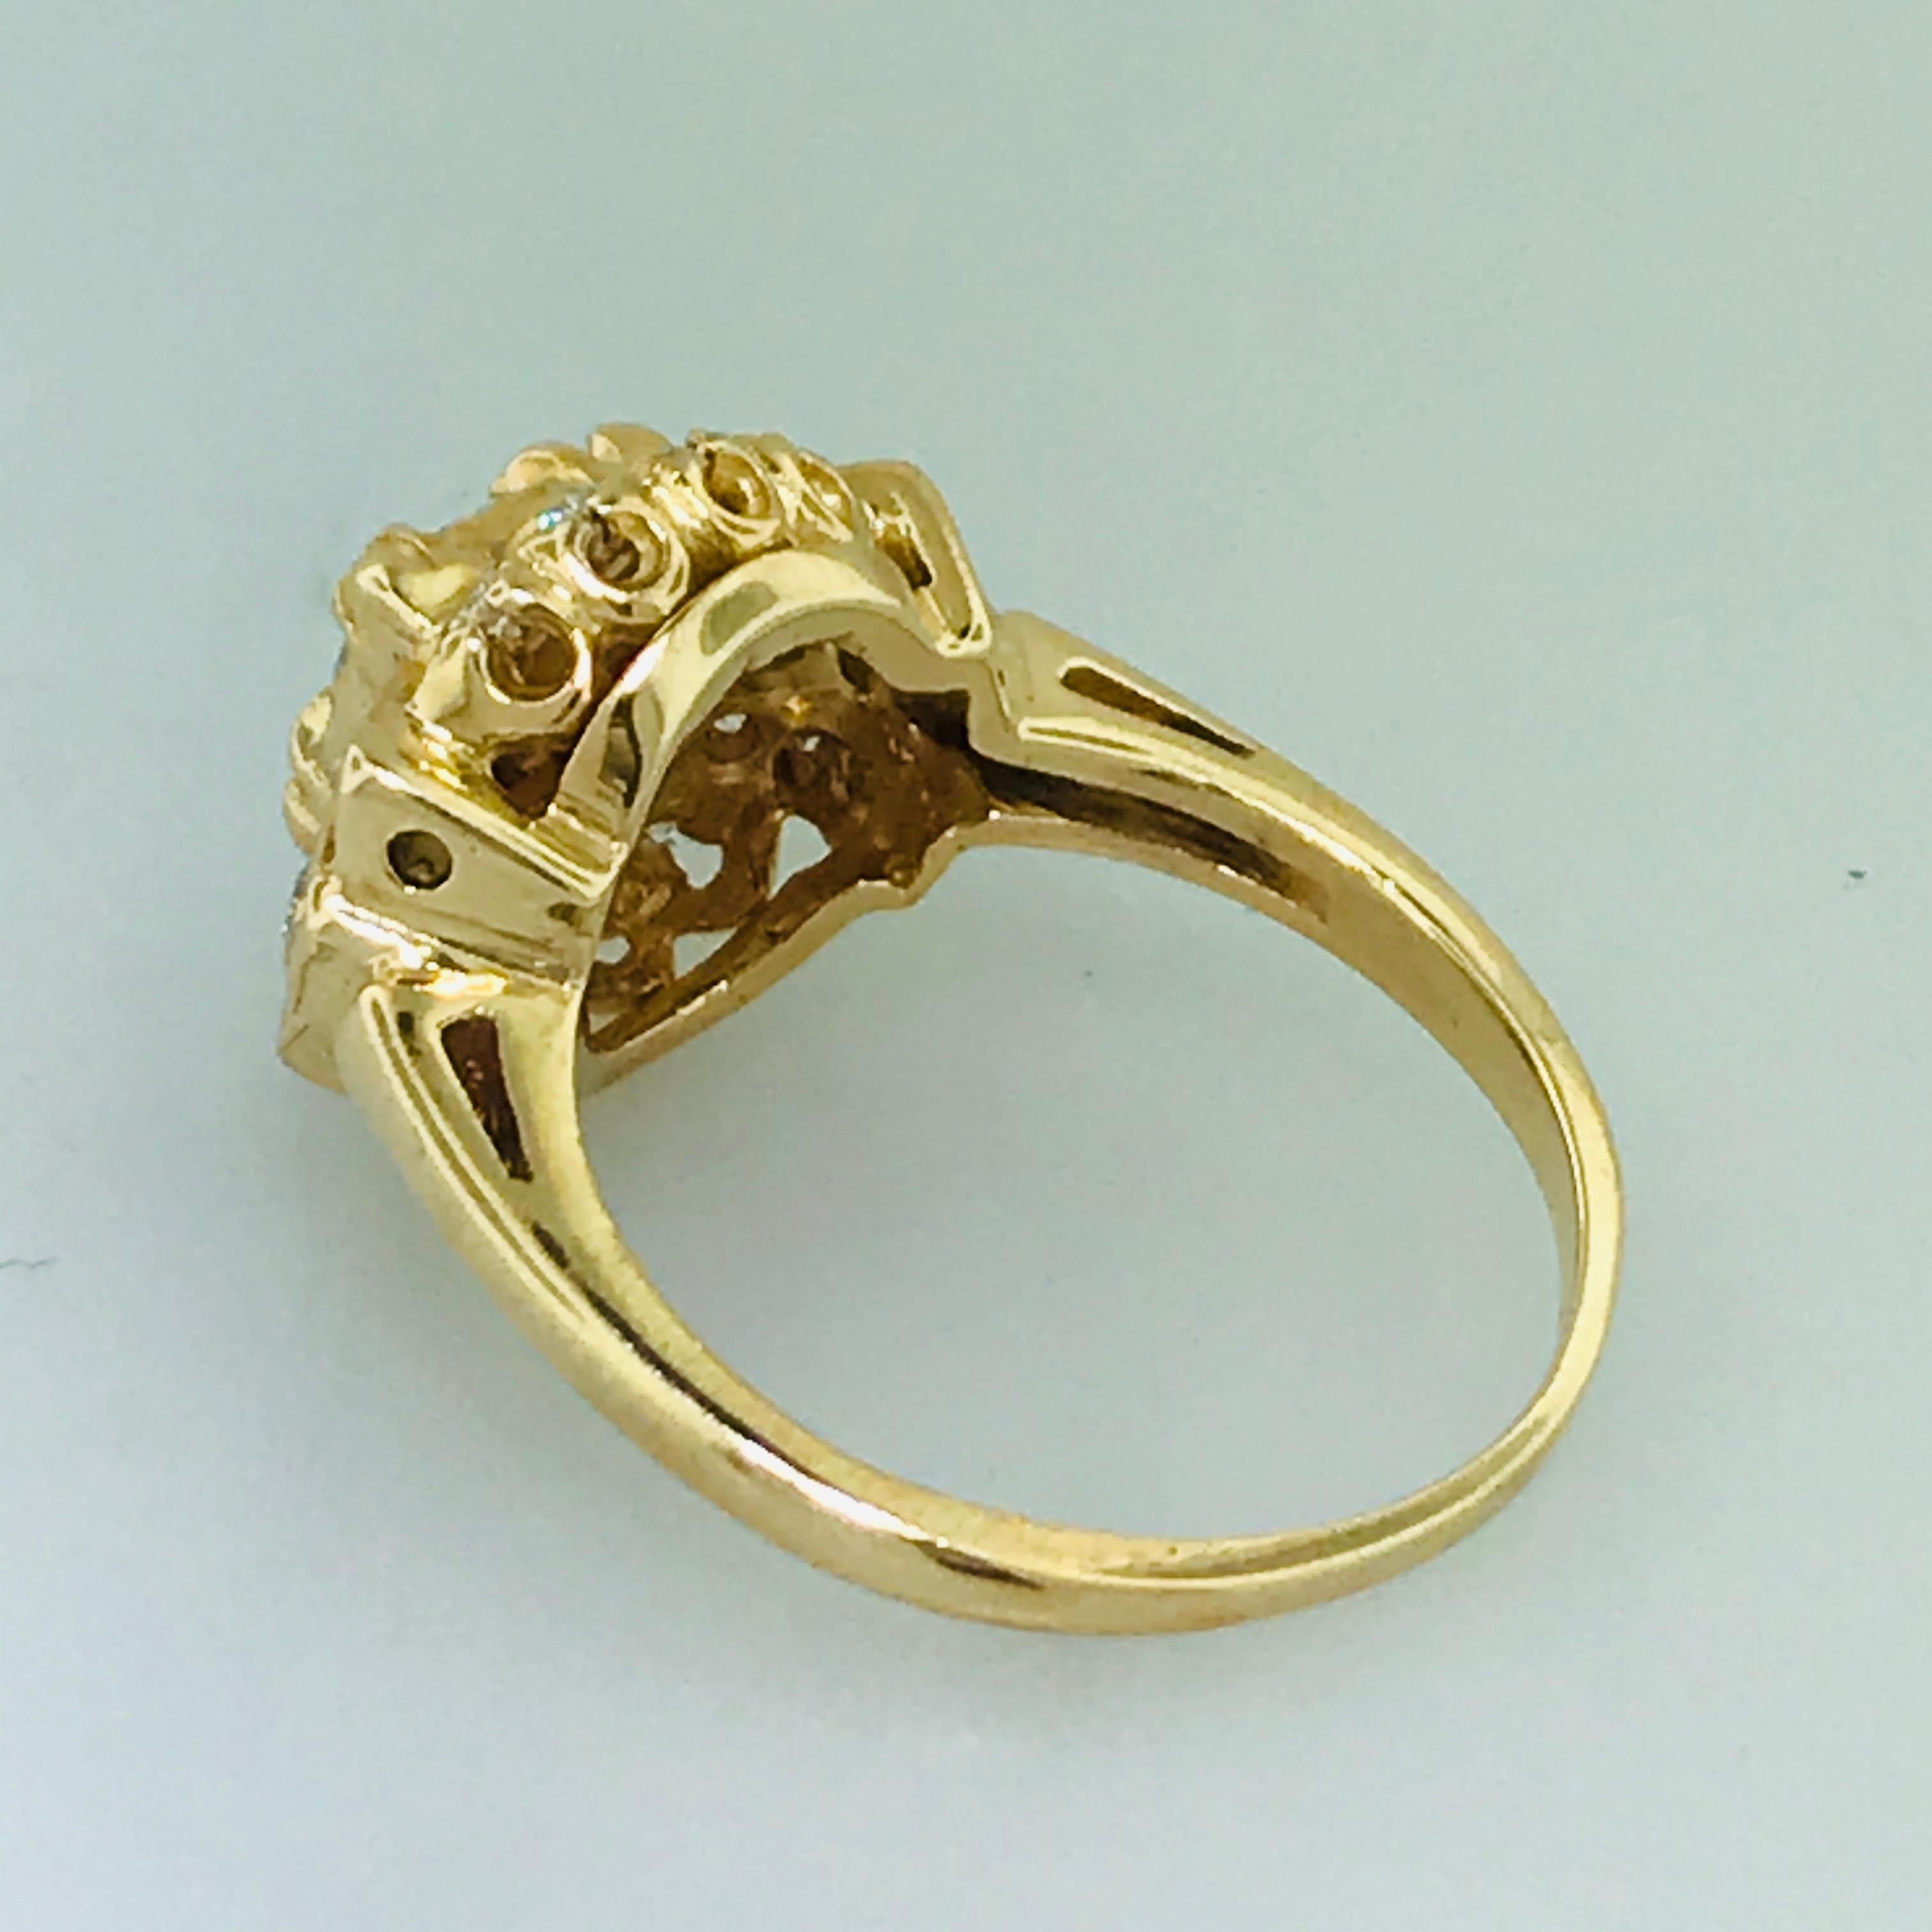 Artisan 1.00 Carat Diamond Vintage Estate Ring in 14 Karat Yellow Gold, circa 1935